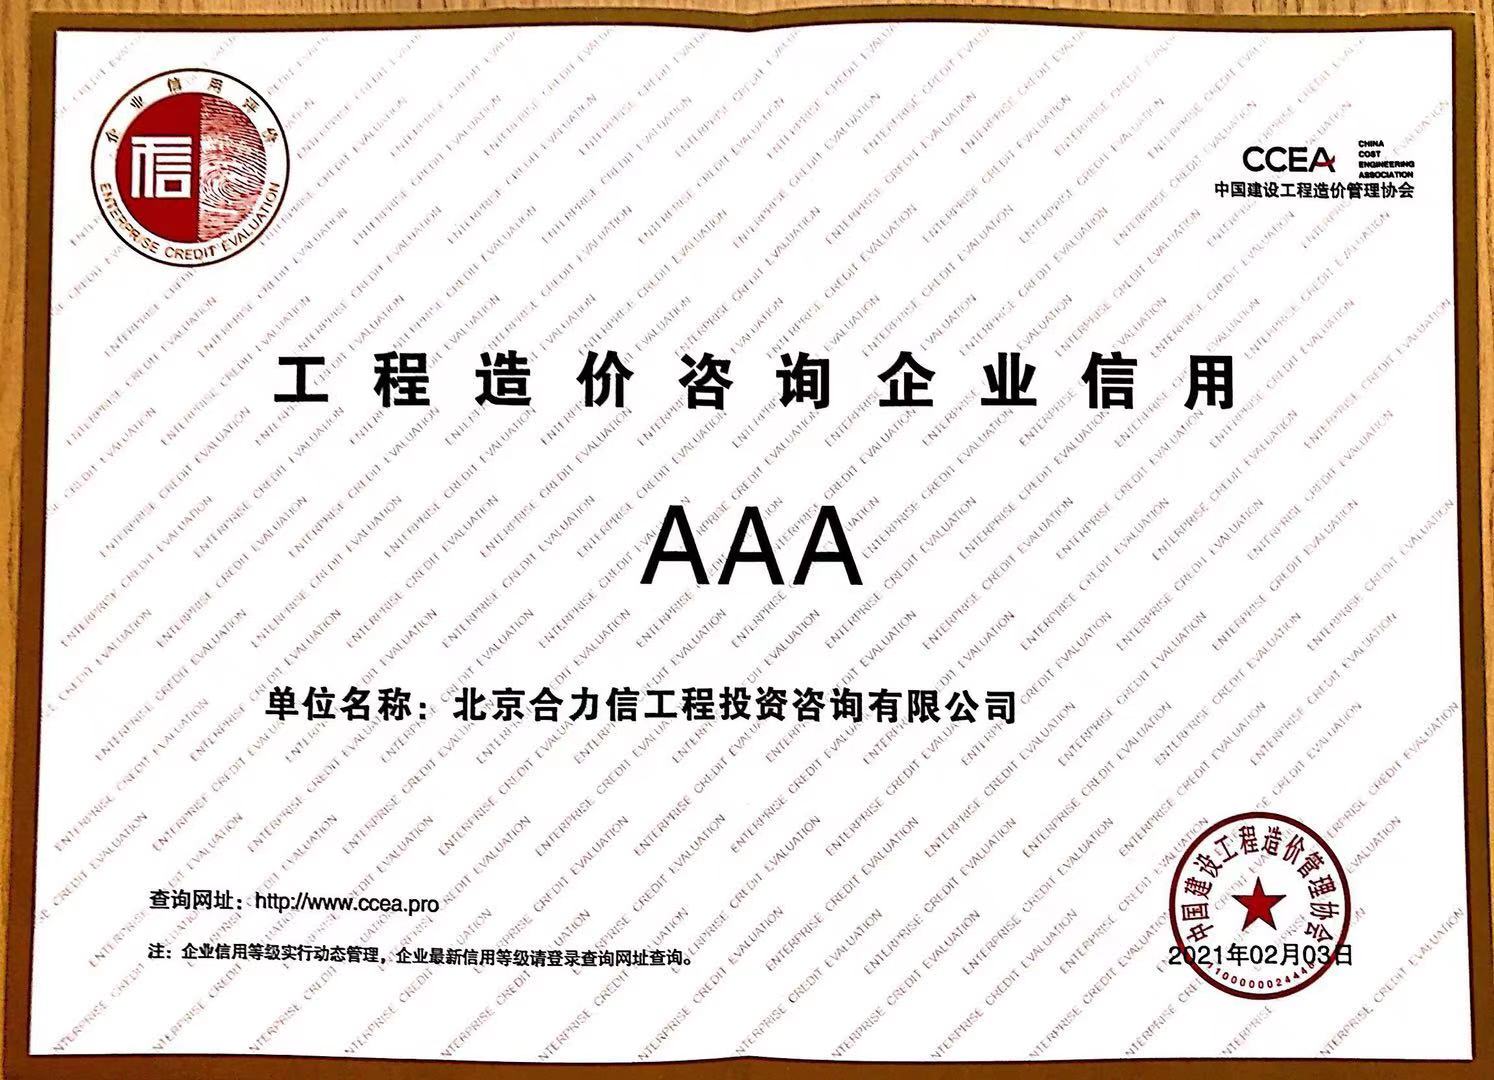 中价协AAA信用评级证书